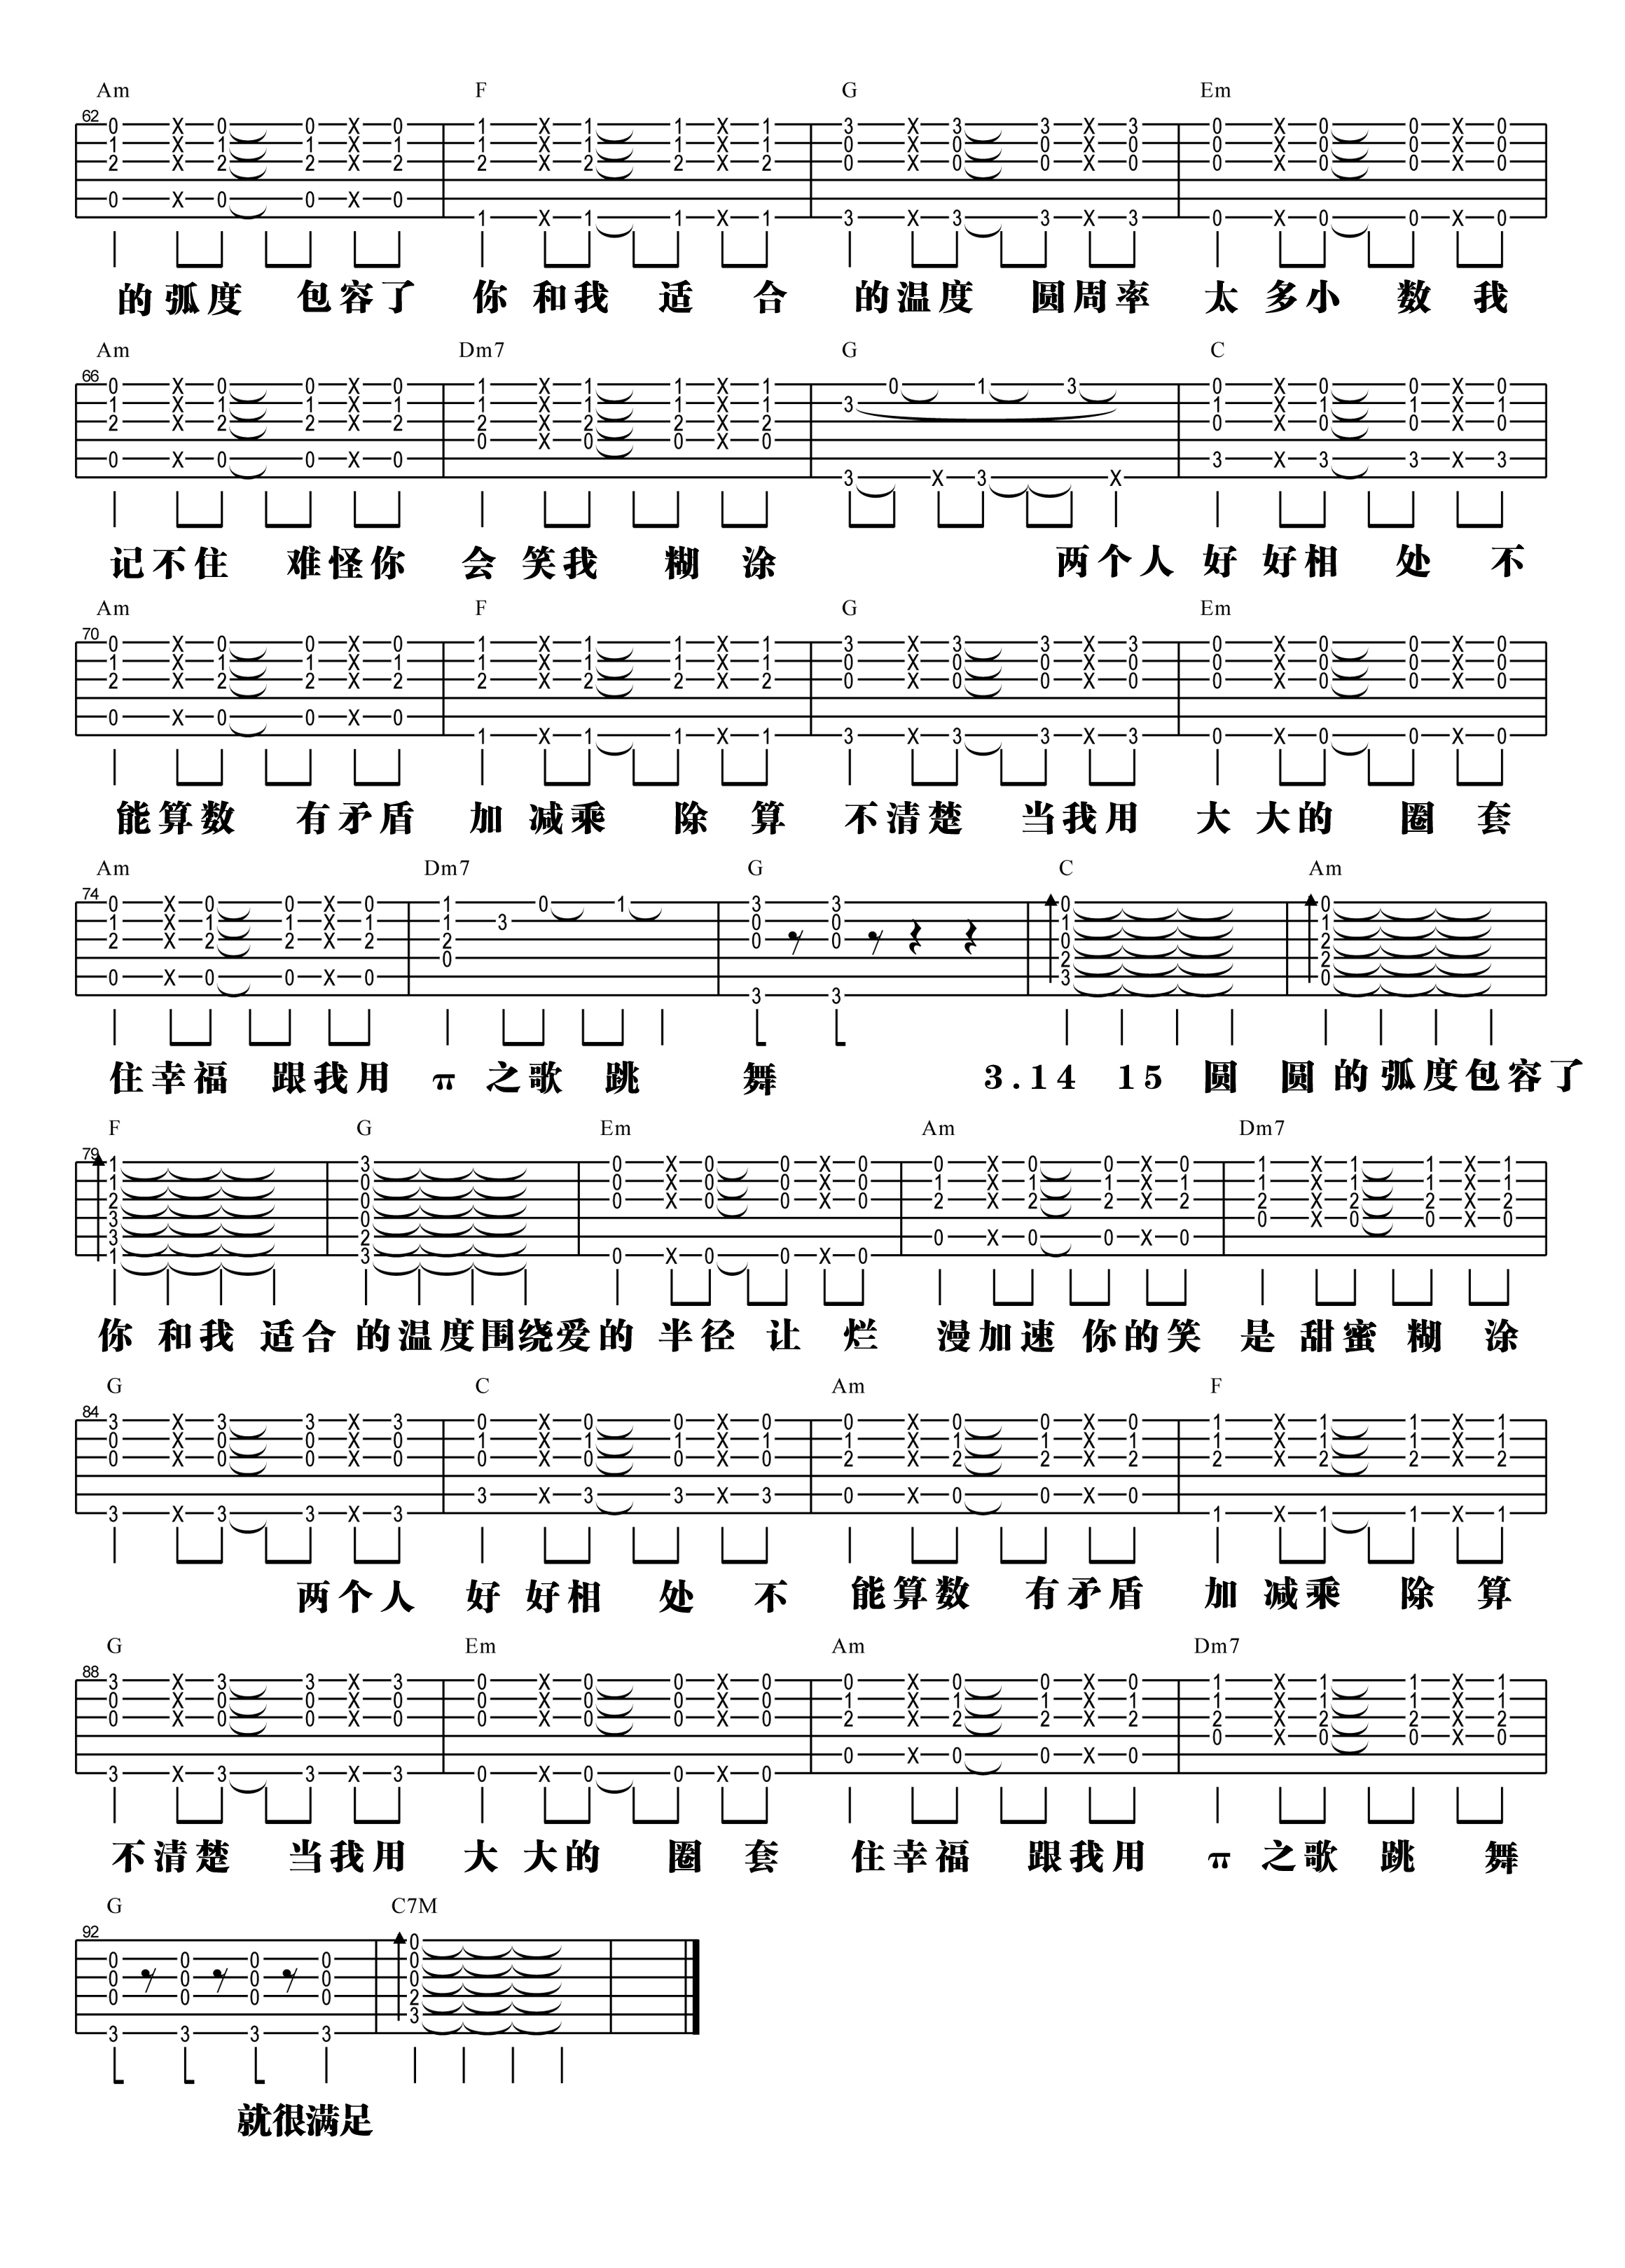 【阿信乐器】#22 汪苏泷《π之歌》吉他教学吉他谱(图片谱,弹唱,教学)_汪苏泷(silence.w)_π之歌-3.jpg